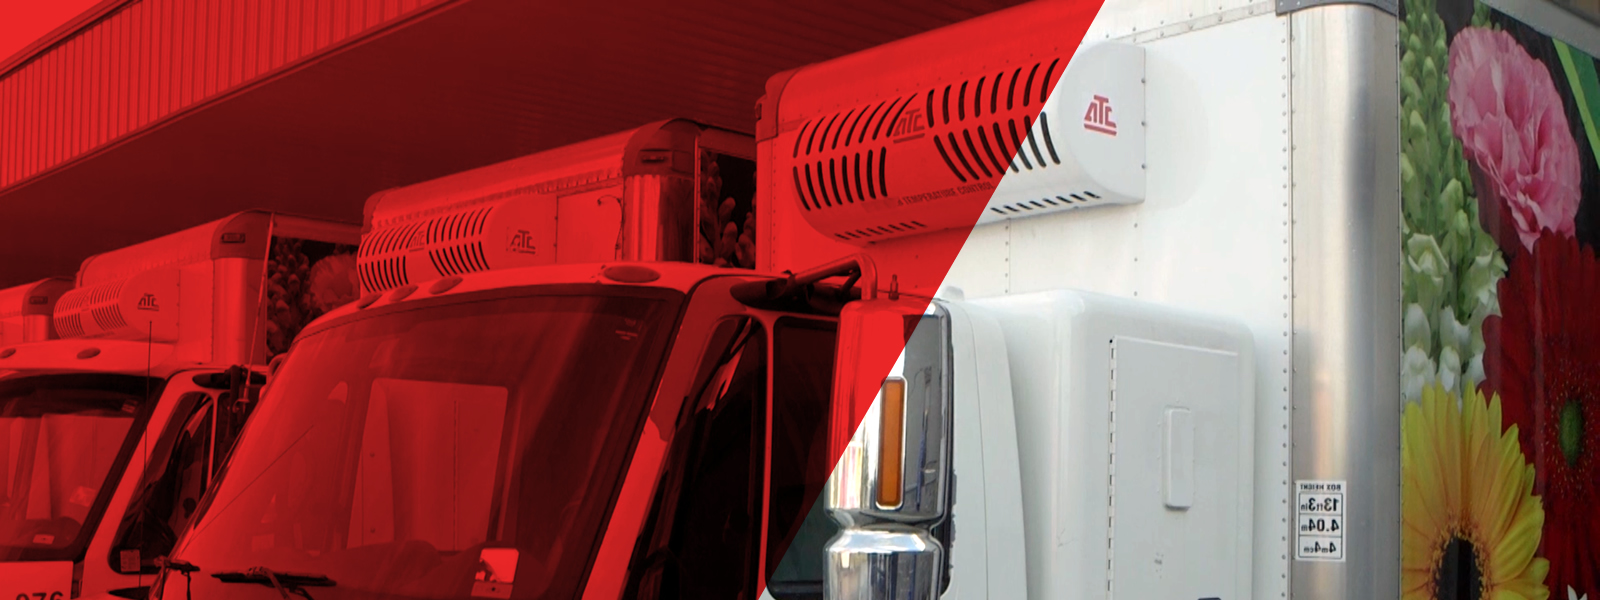 鼻机安装系统专为中型到大型盒装卡车和拖车，以支持各种城市送货应用，可选的鼻子安装电备用。